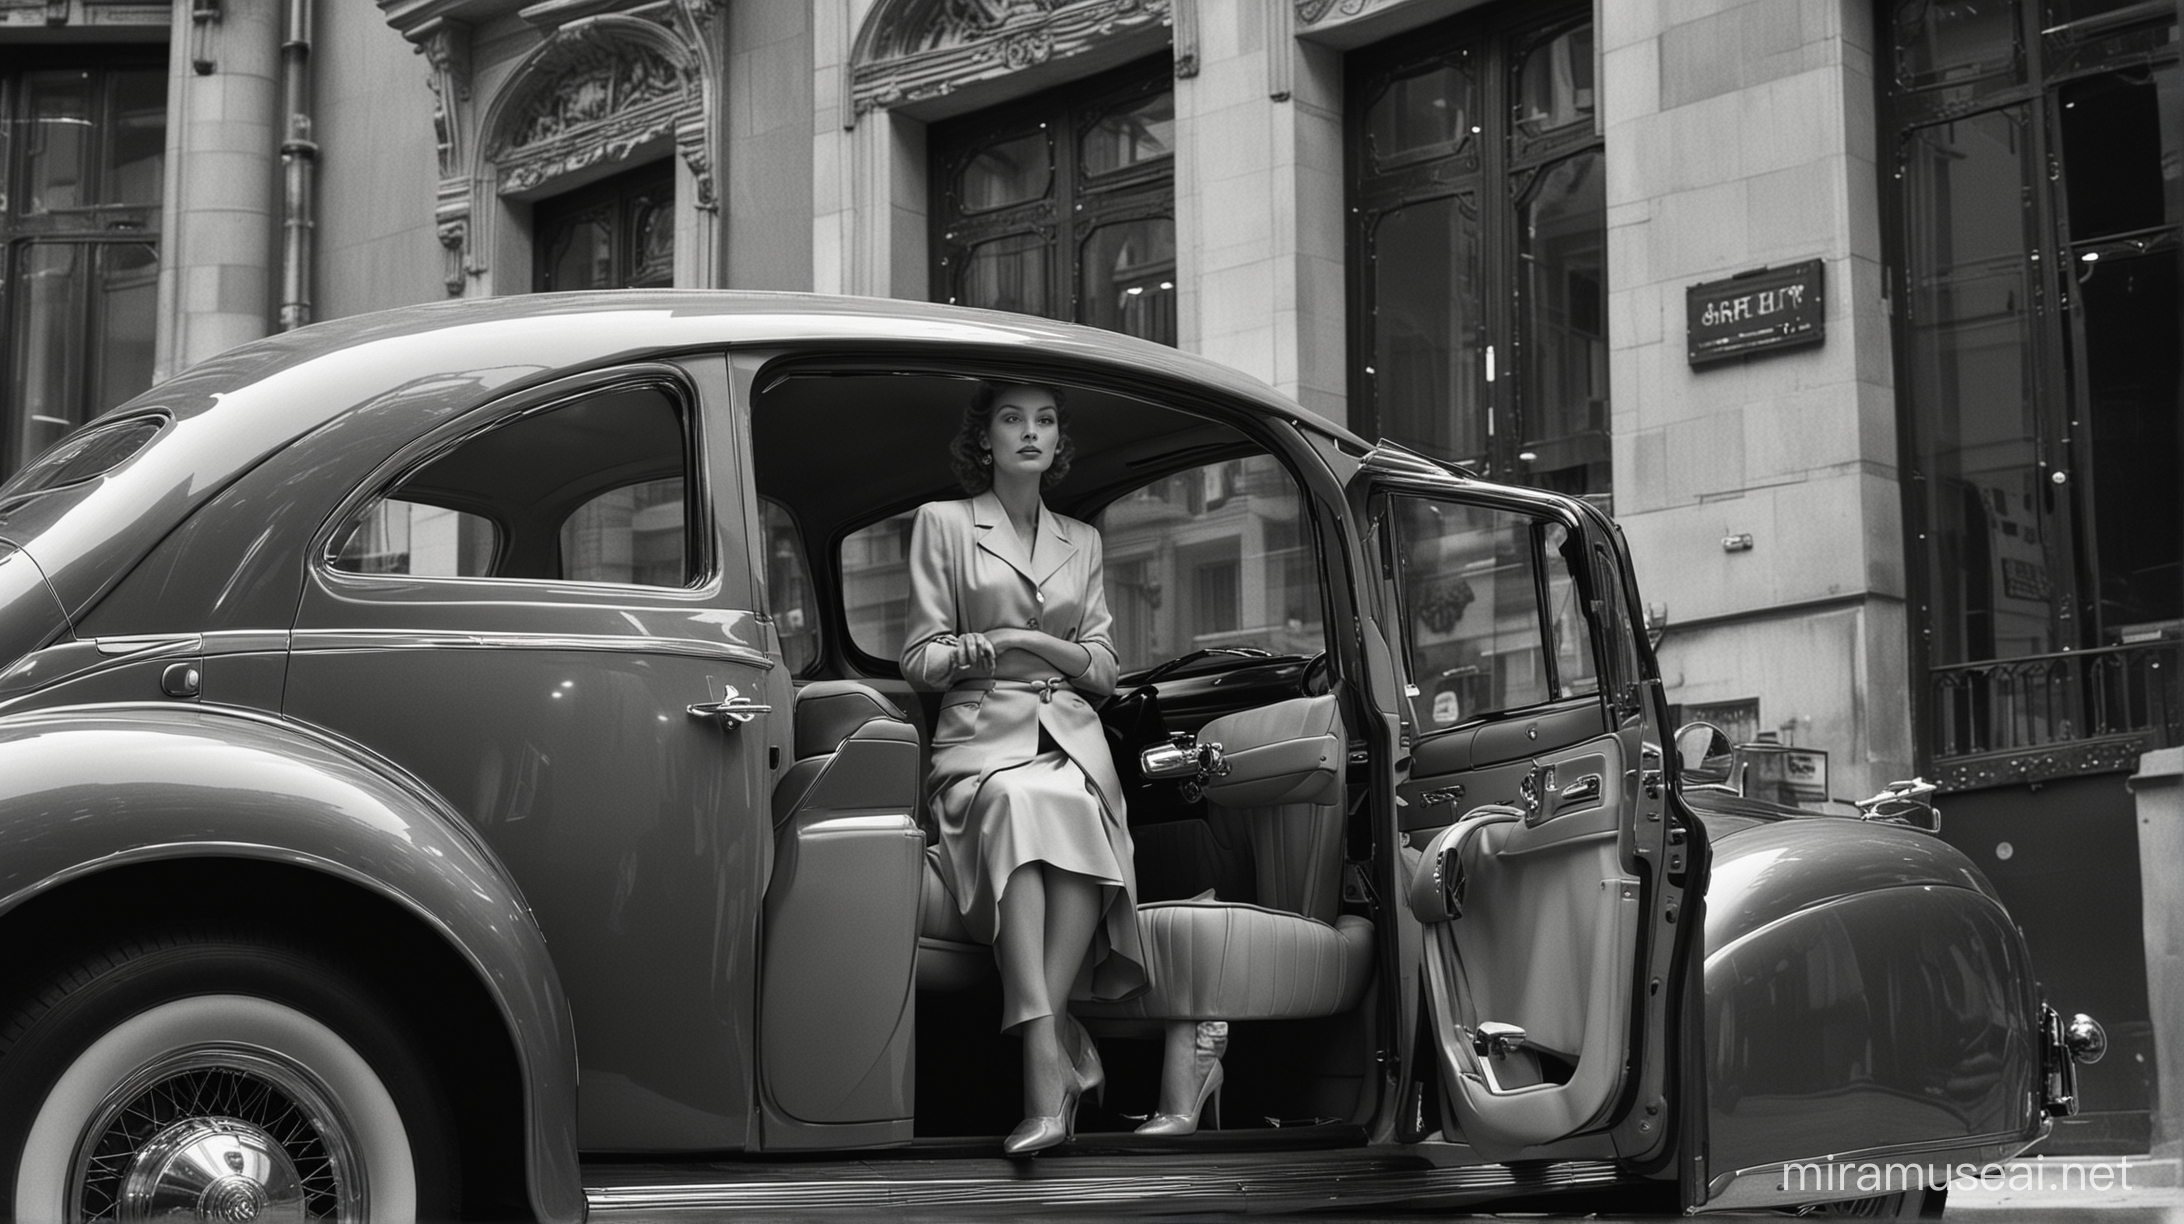 dans une vision proche du sol en contre plongée, en en vue grand angulaire dans le style de jeanloup sieff, une femme de luxe assise à l'arrière d'une voiture de luxe ,se fait ouvrir la porte par son major d'homme.....dans une époque des années 1940 et une vision rétro futuriste ultra colorée